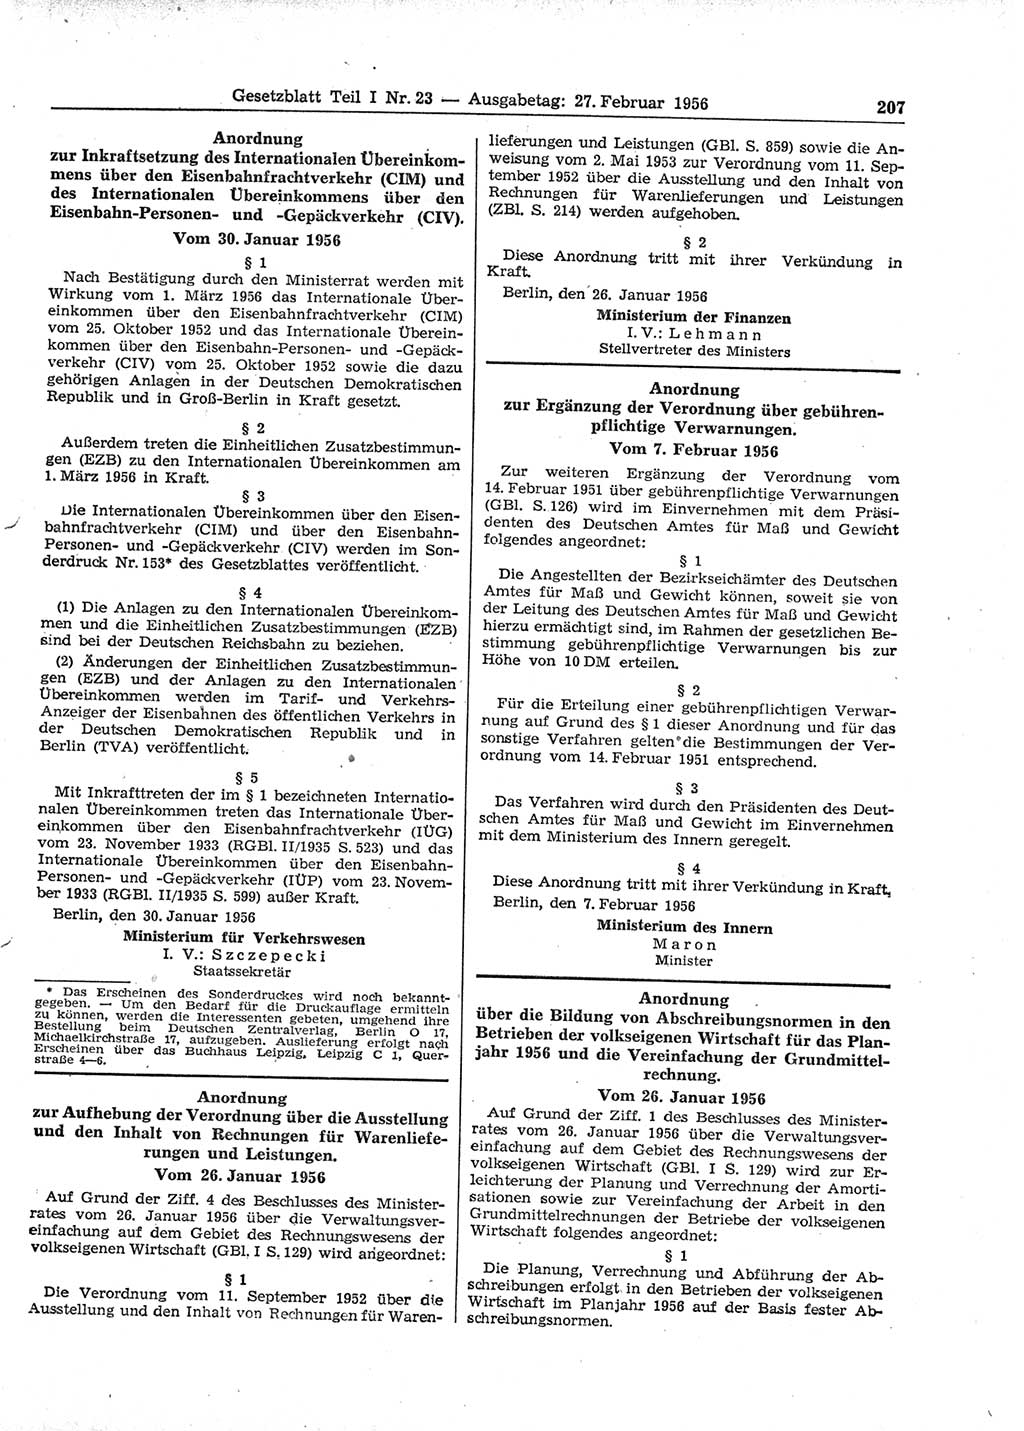 Gesetzblatt (GBl.) der Deutschen Demokratischen Republik (DDR) Teil Ⅰ 1956, Seite 207 (GBl. DDR Ⅰ 1956, S. 207)